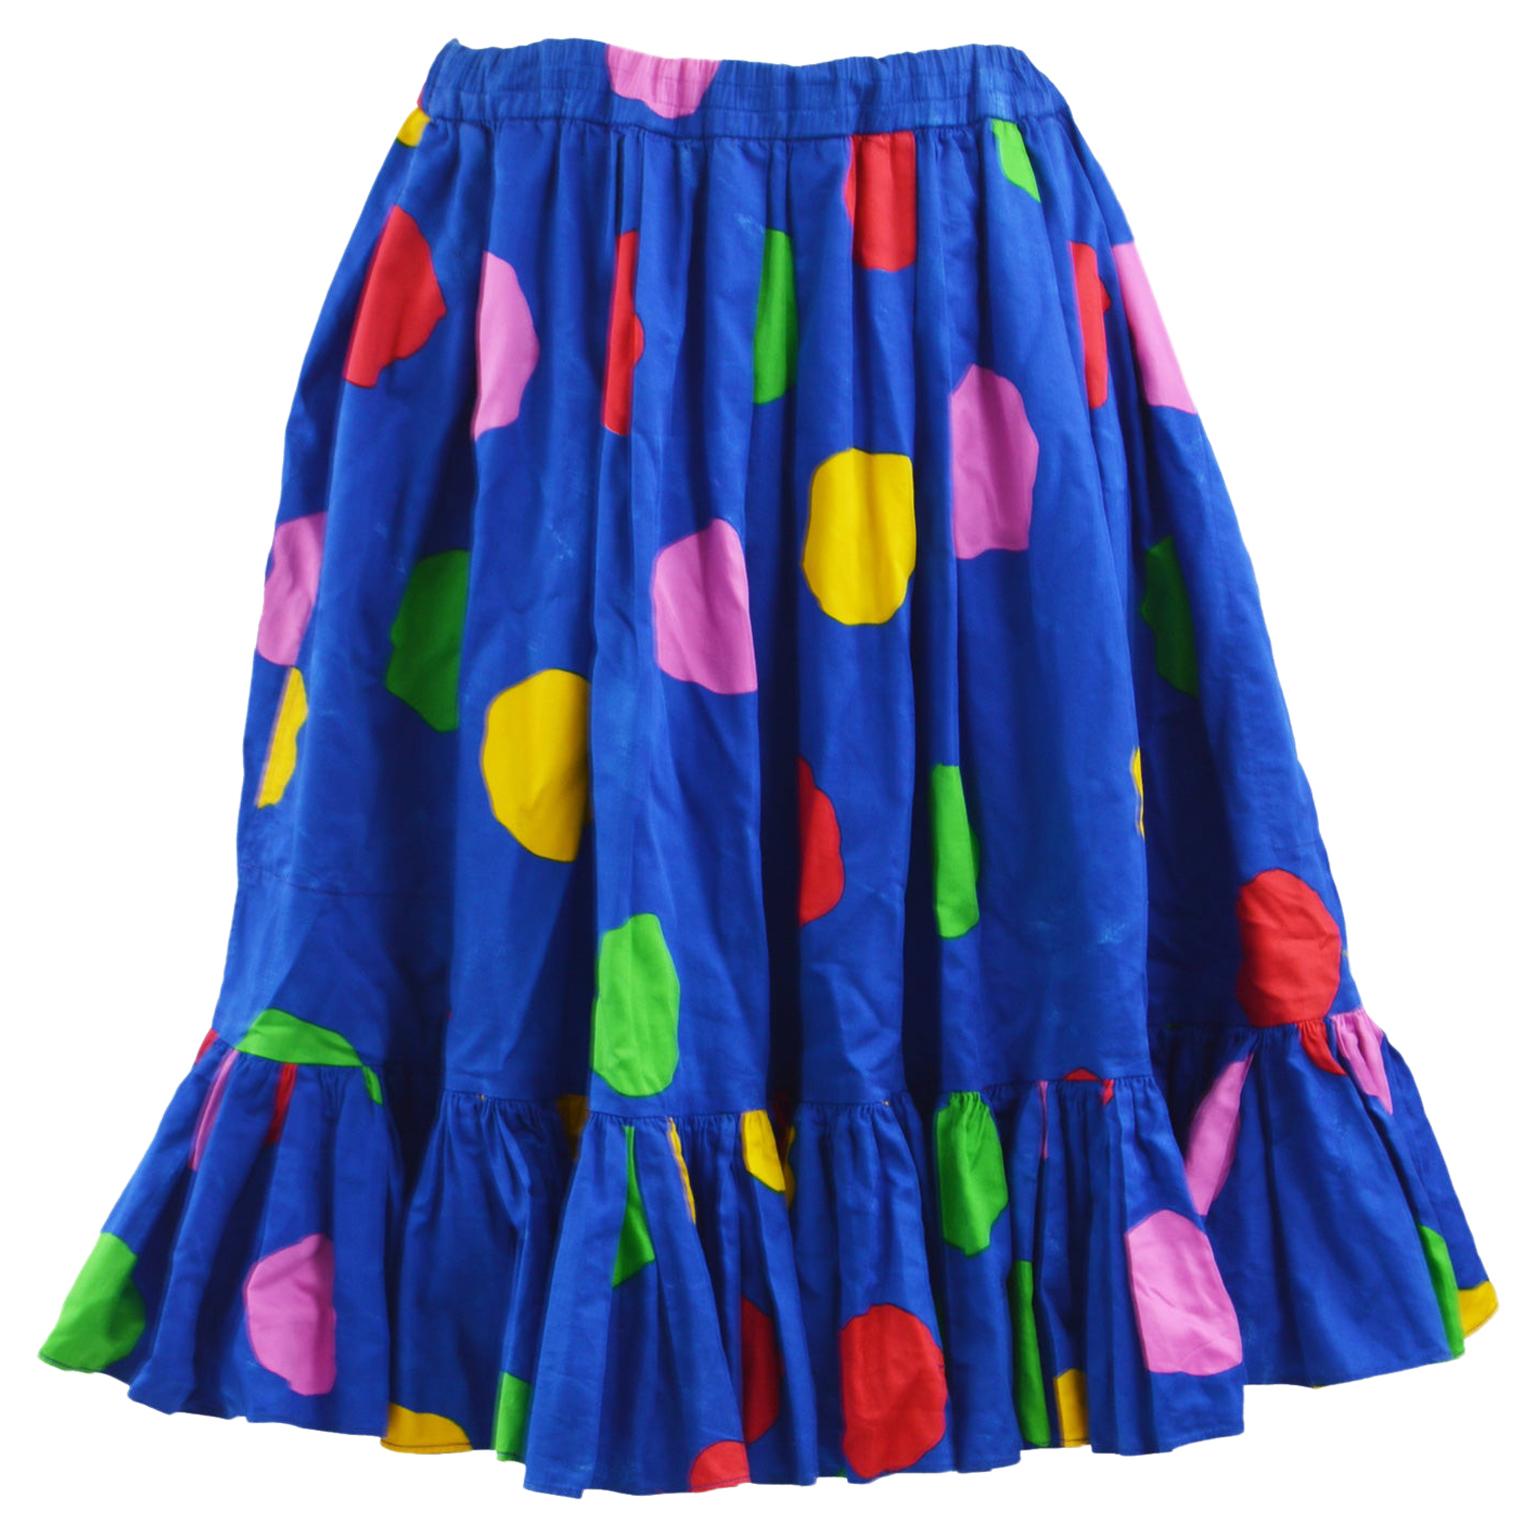 Yves Saint Laurent Vintage Polka Dot Skirt For Sale